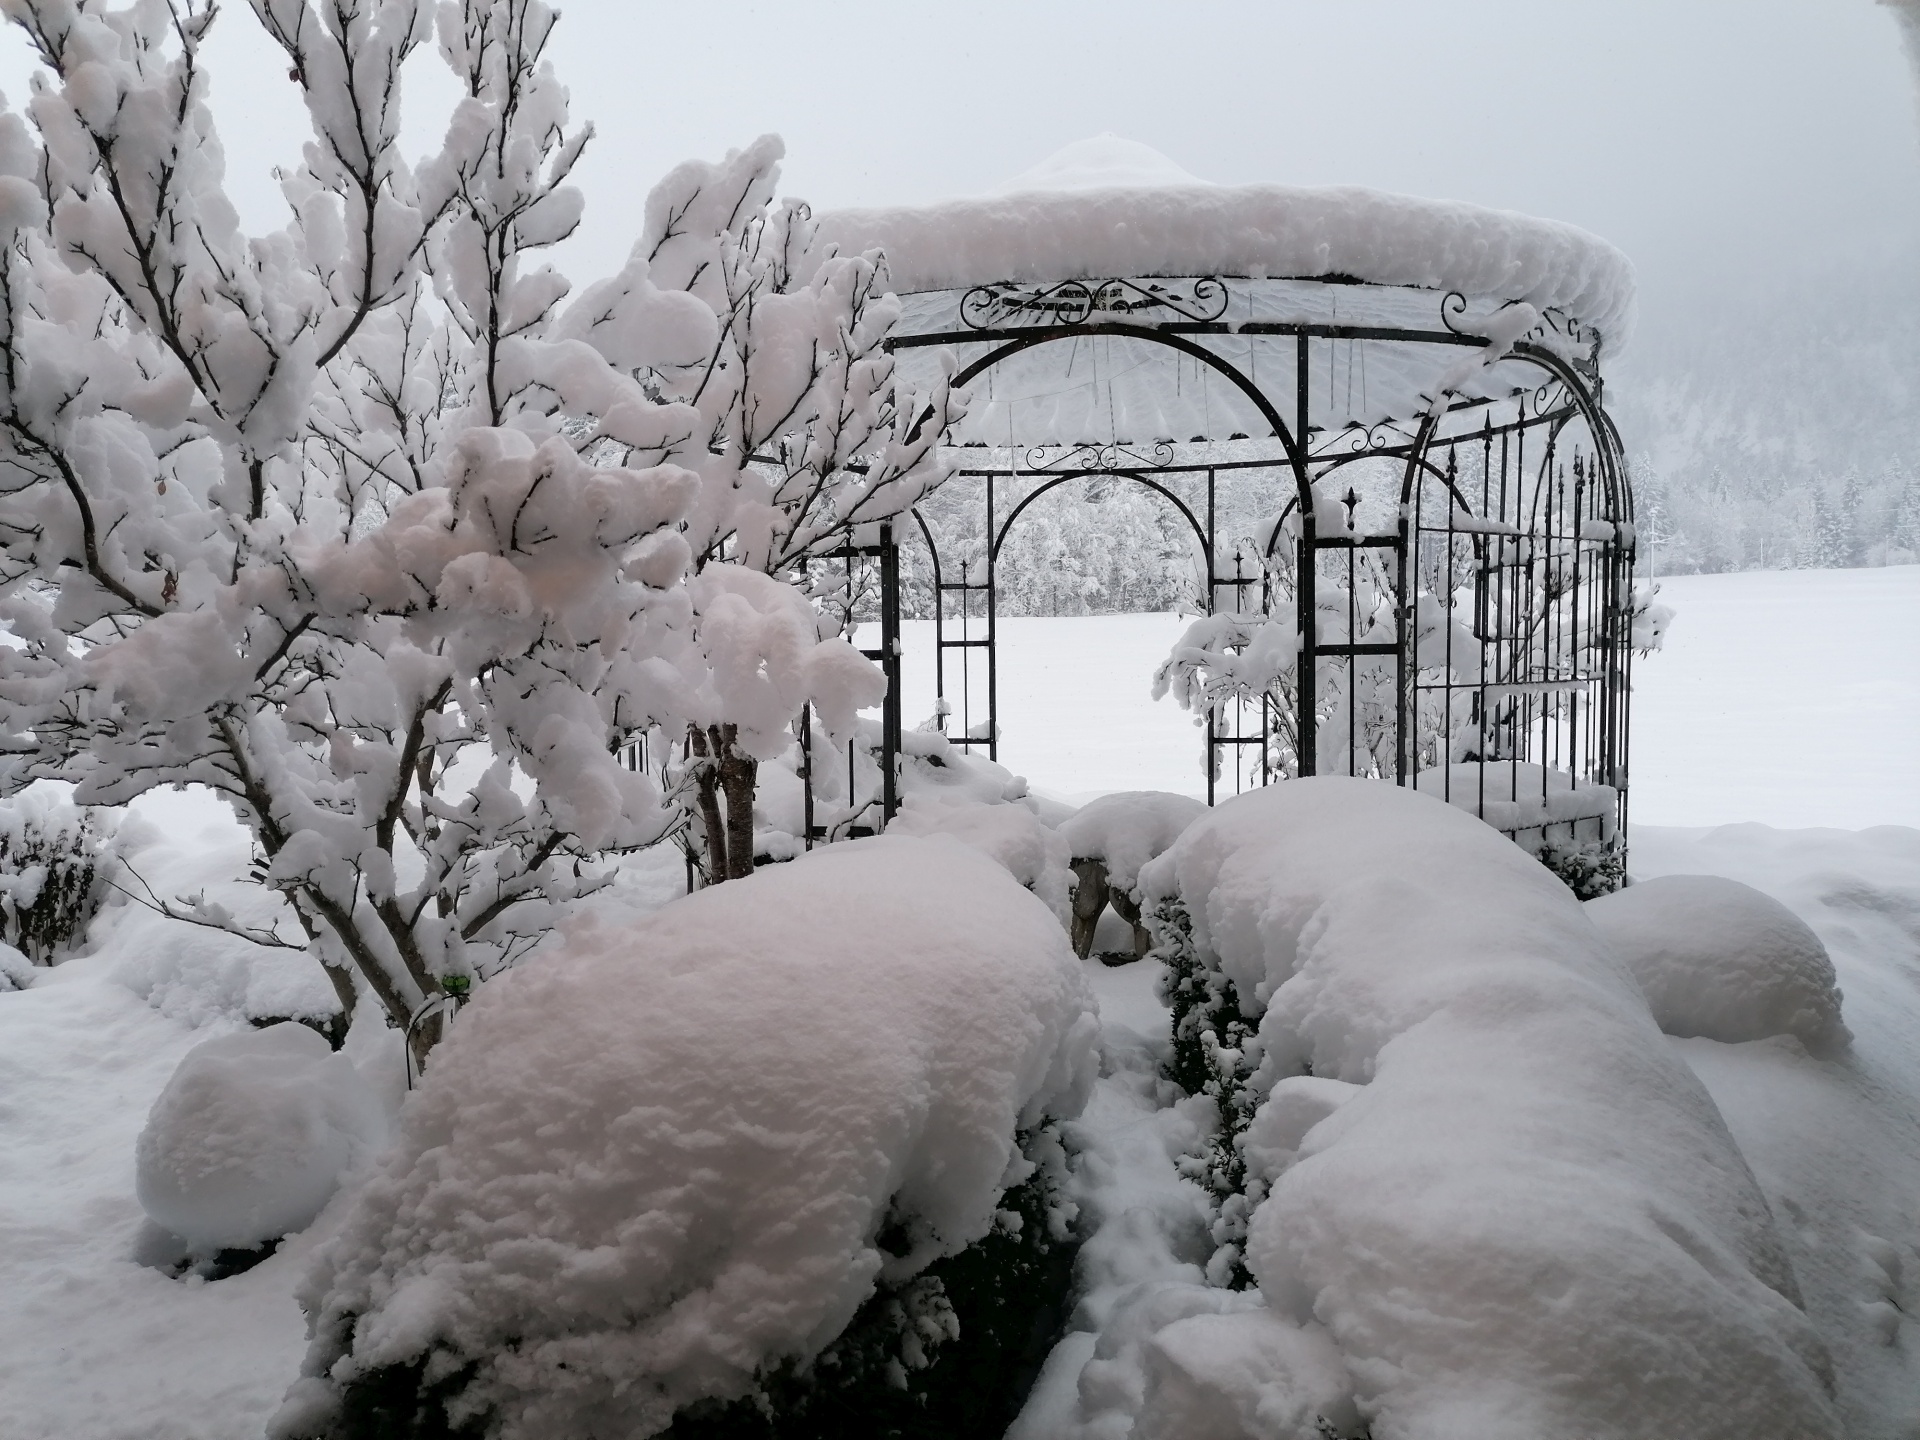 gloriette en fer forgé sous une couverture de neige épaisse